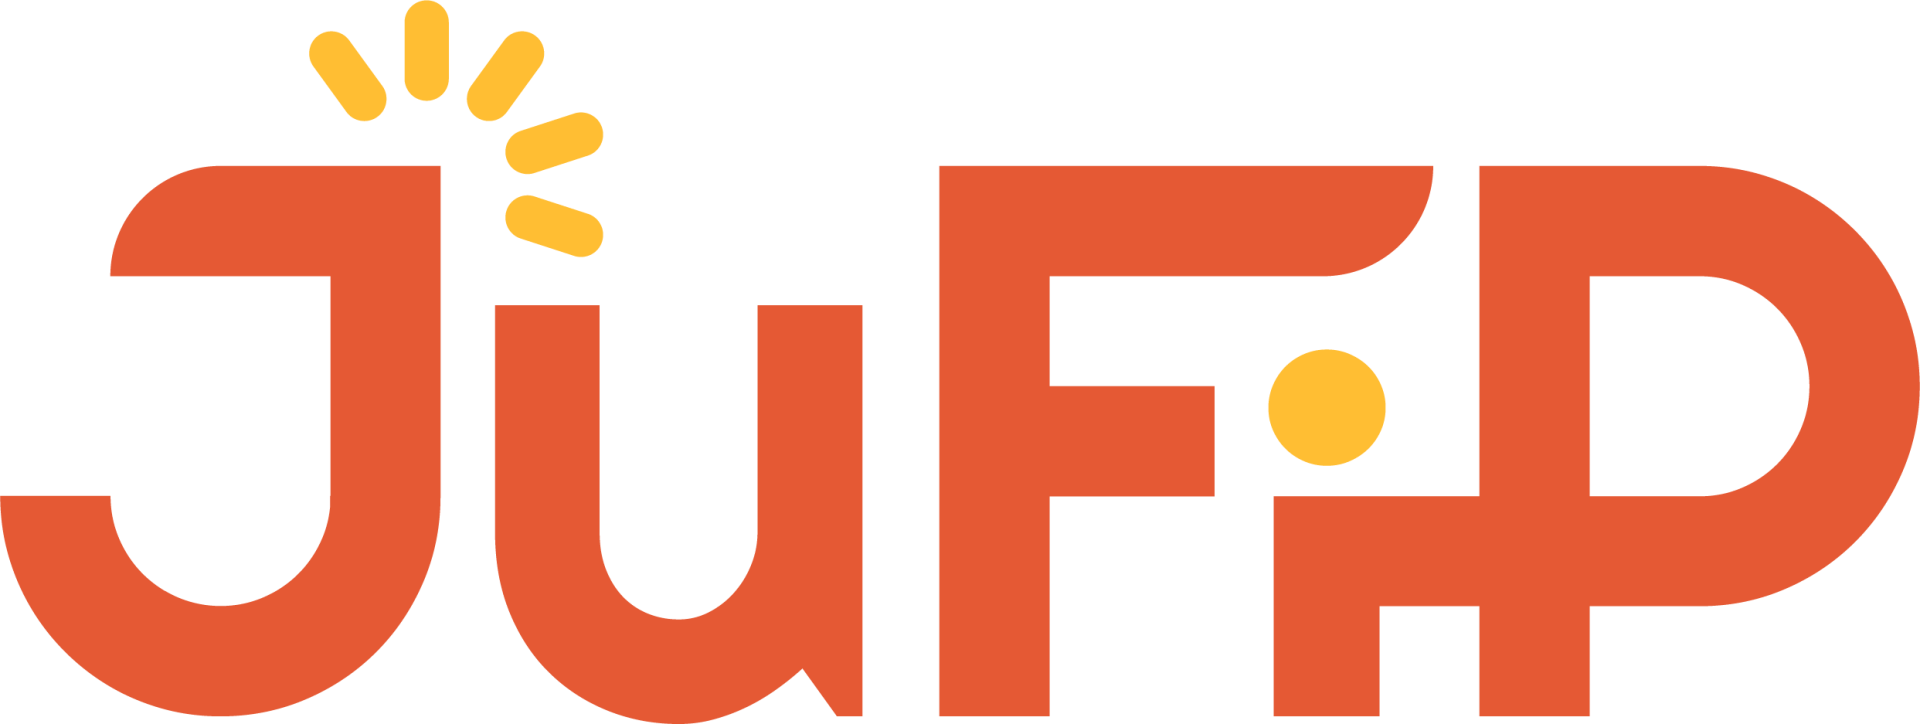 Le logo du site Jufip.fr